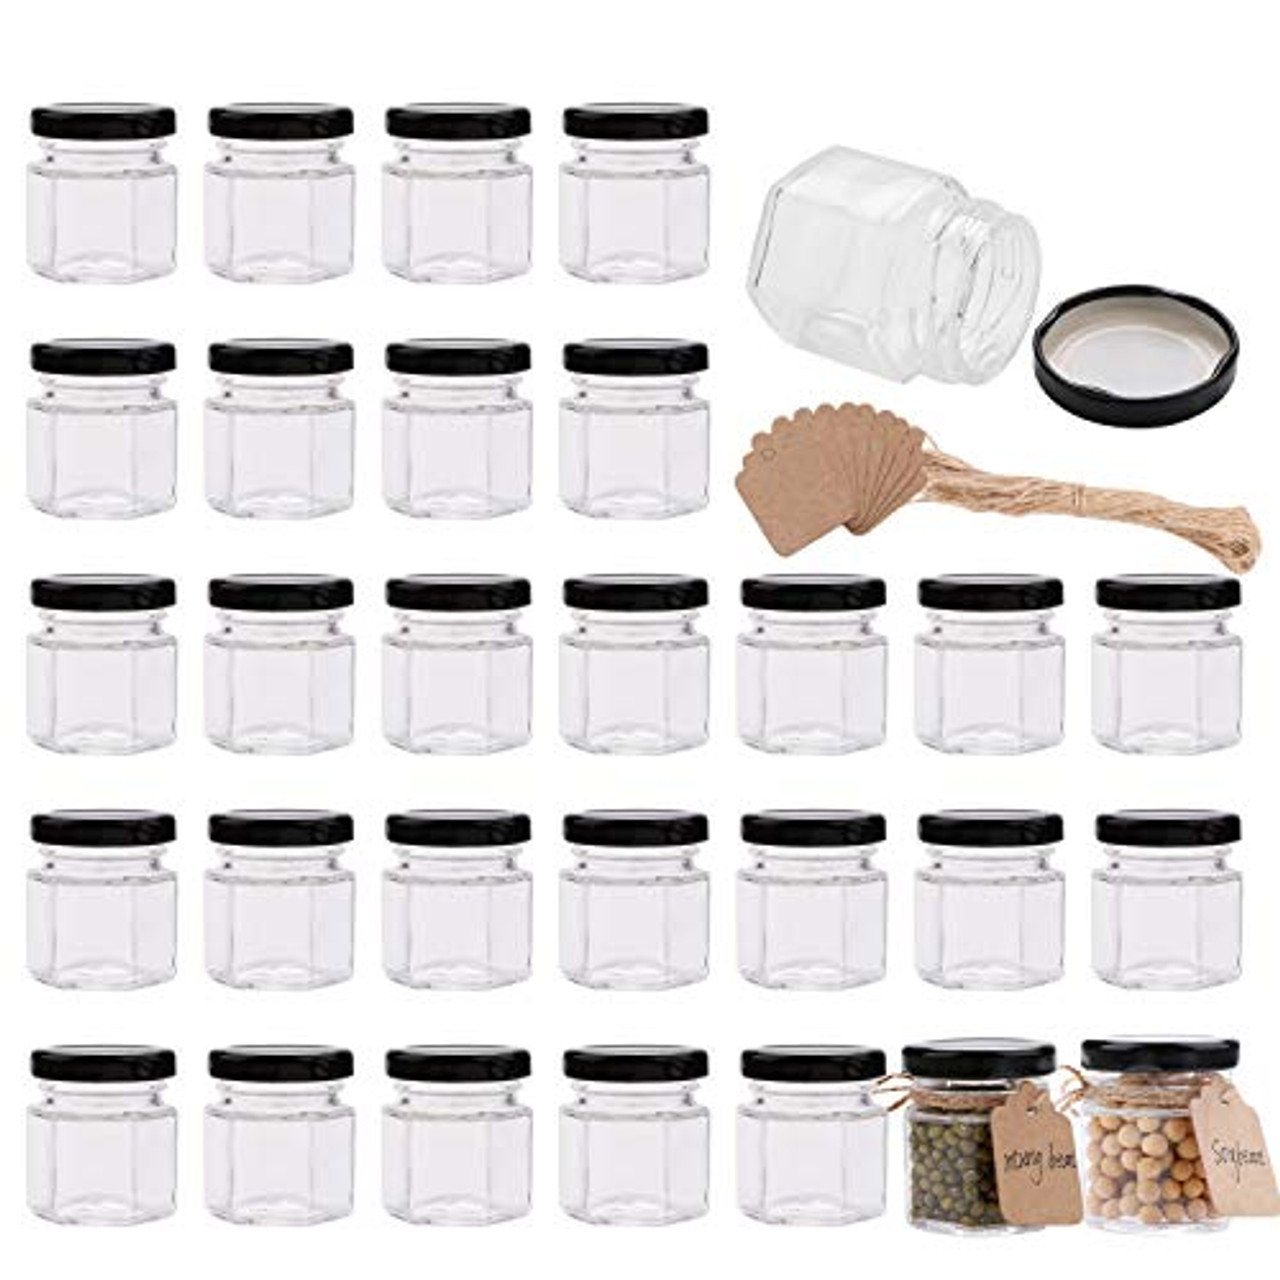 Hexagon Spice Jars with Hermetic Lids (4 ct) Delivery - DoorDash